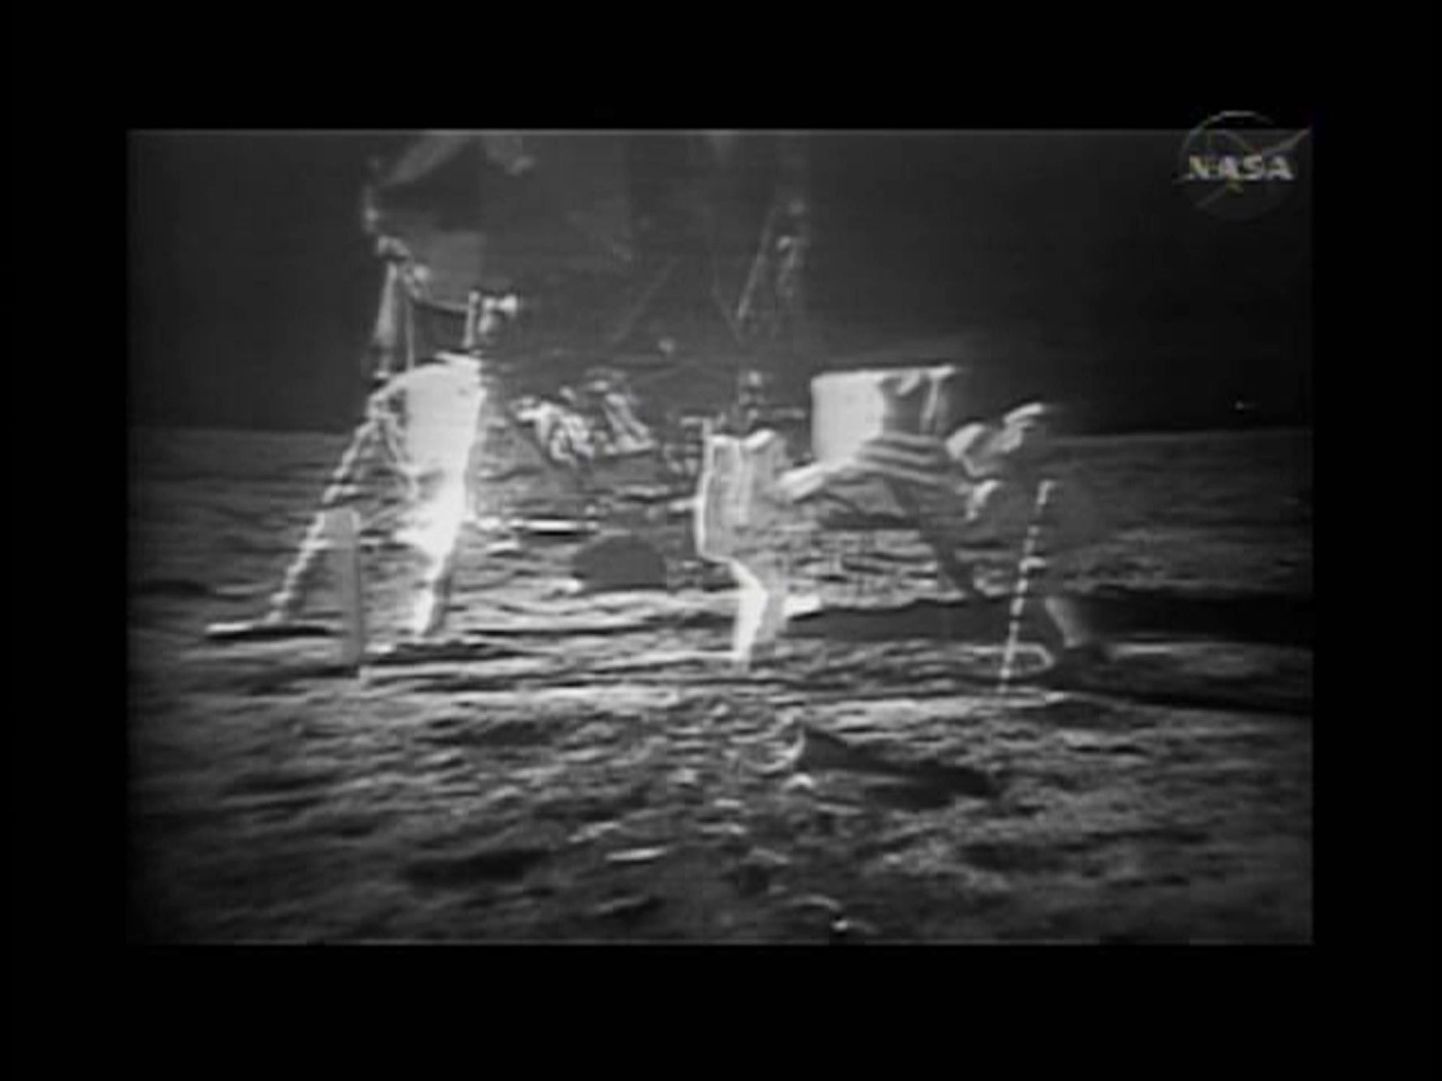 NASA TV pilt Apollo 11 astronautidest Kuu pinnal